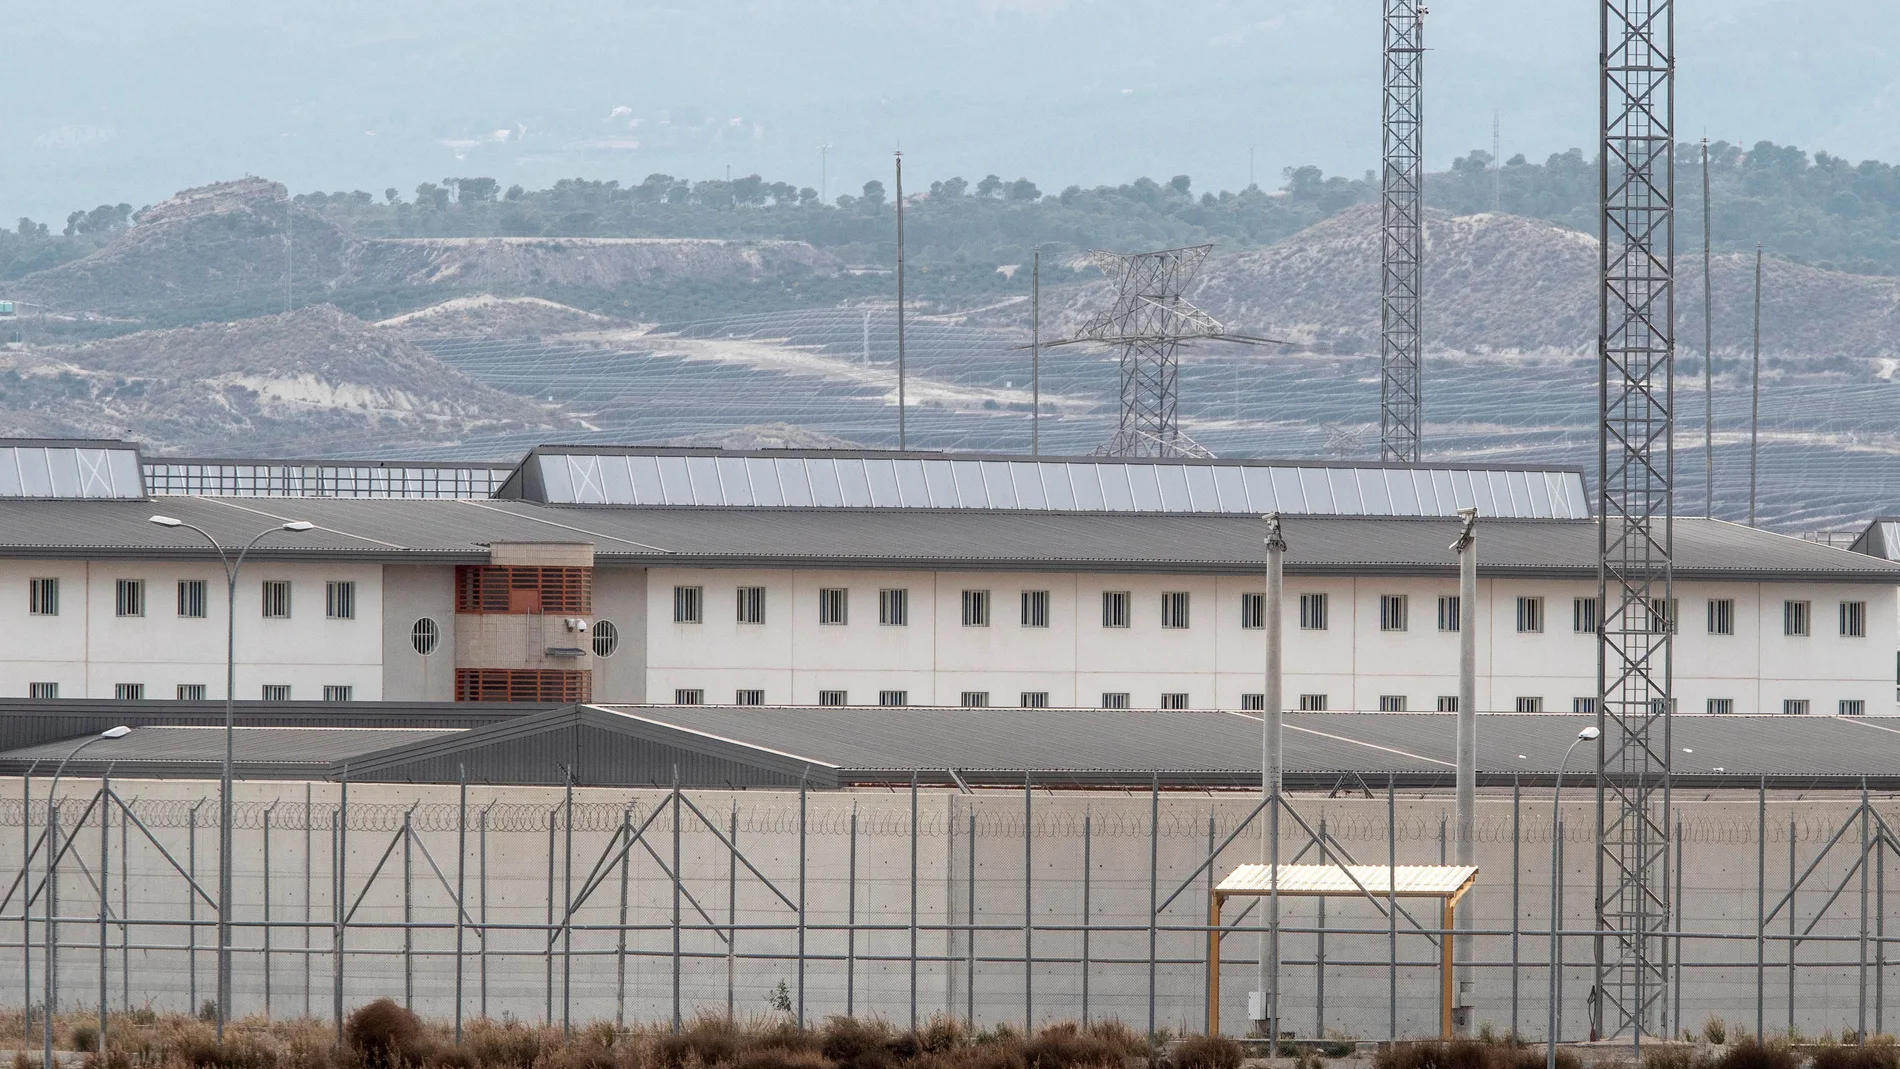 Vista general del centro penitenciario Murcia 2, situada en la localidad murciana de Campos del Río